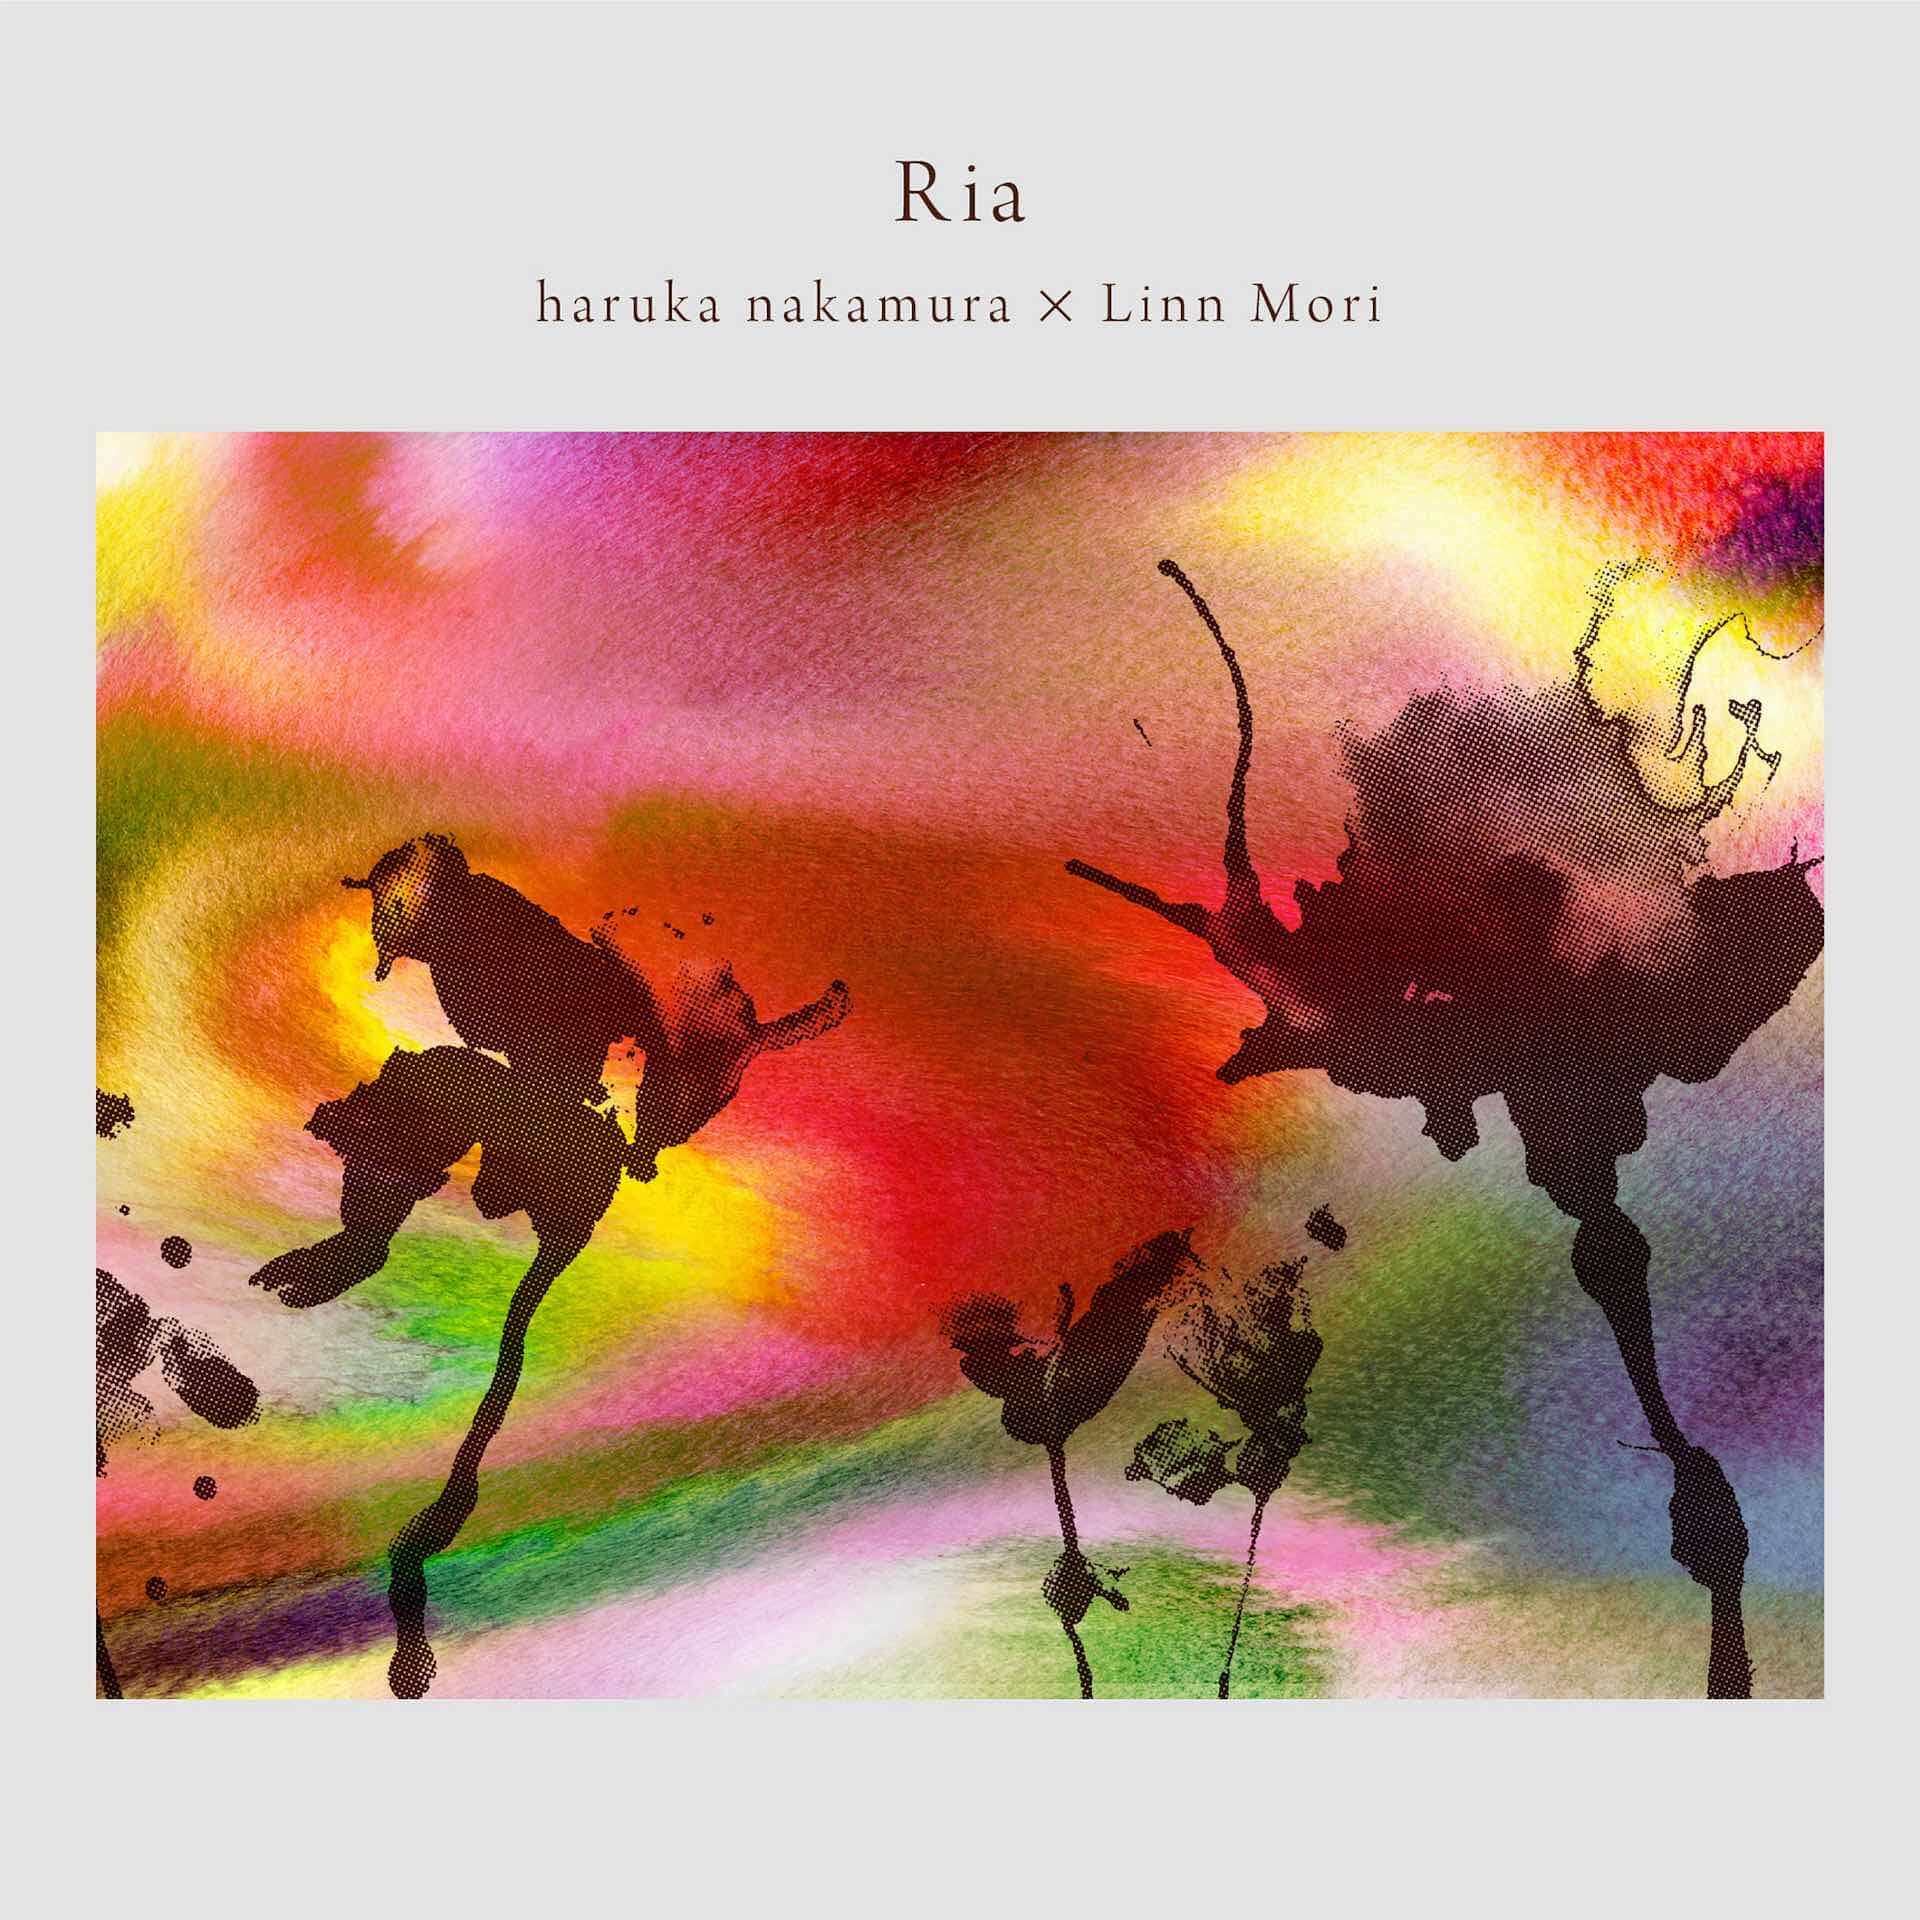 haruka nakamuraとLinn Moriのコラボ曲“Ria”がリリース！アートワークはFJD・藤田二郎が担当 music200902_harukanakamura_1-1920x1920